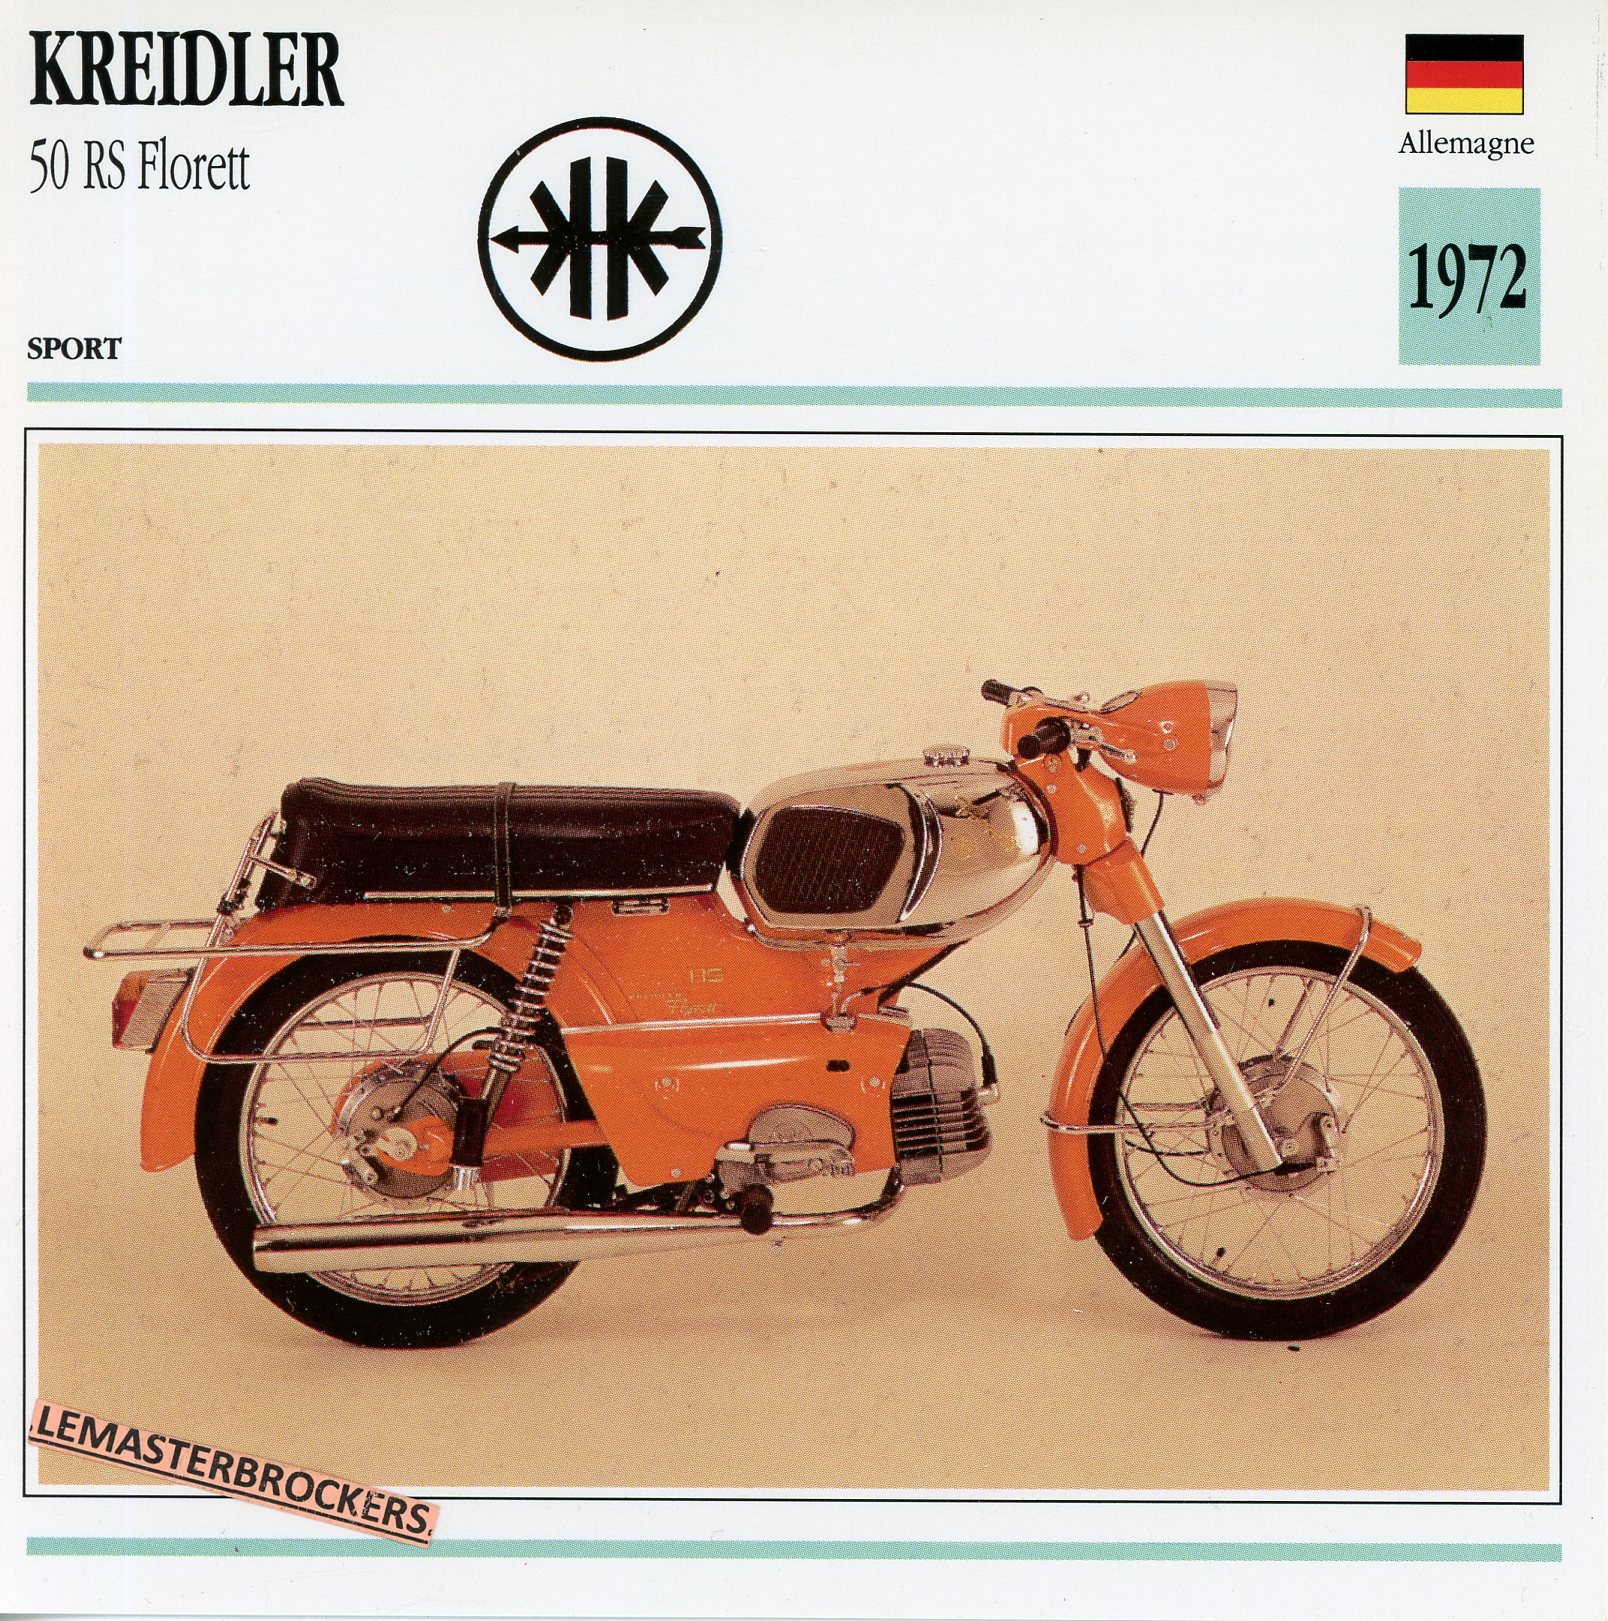 KREIDLER-50-RS-FLORETT-1972-LEMASTERBROCKERS-FICHE-MOTO-ATLAS-CARD